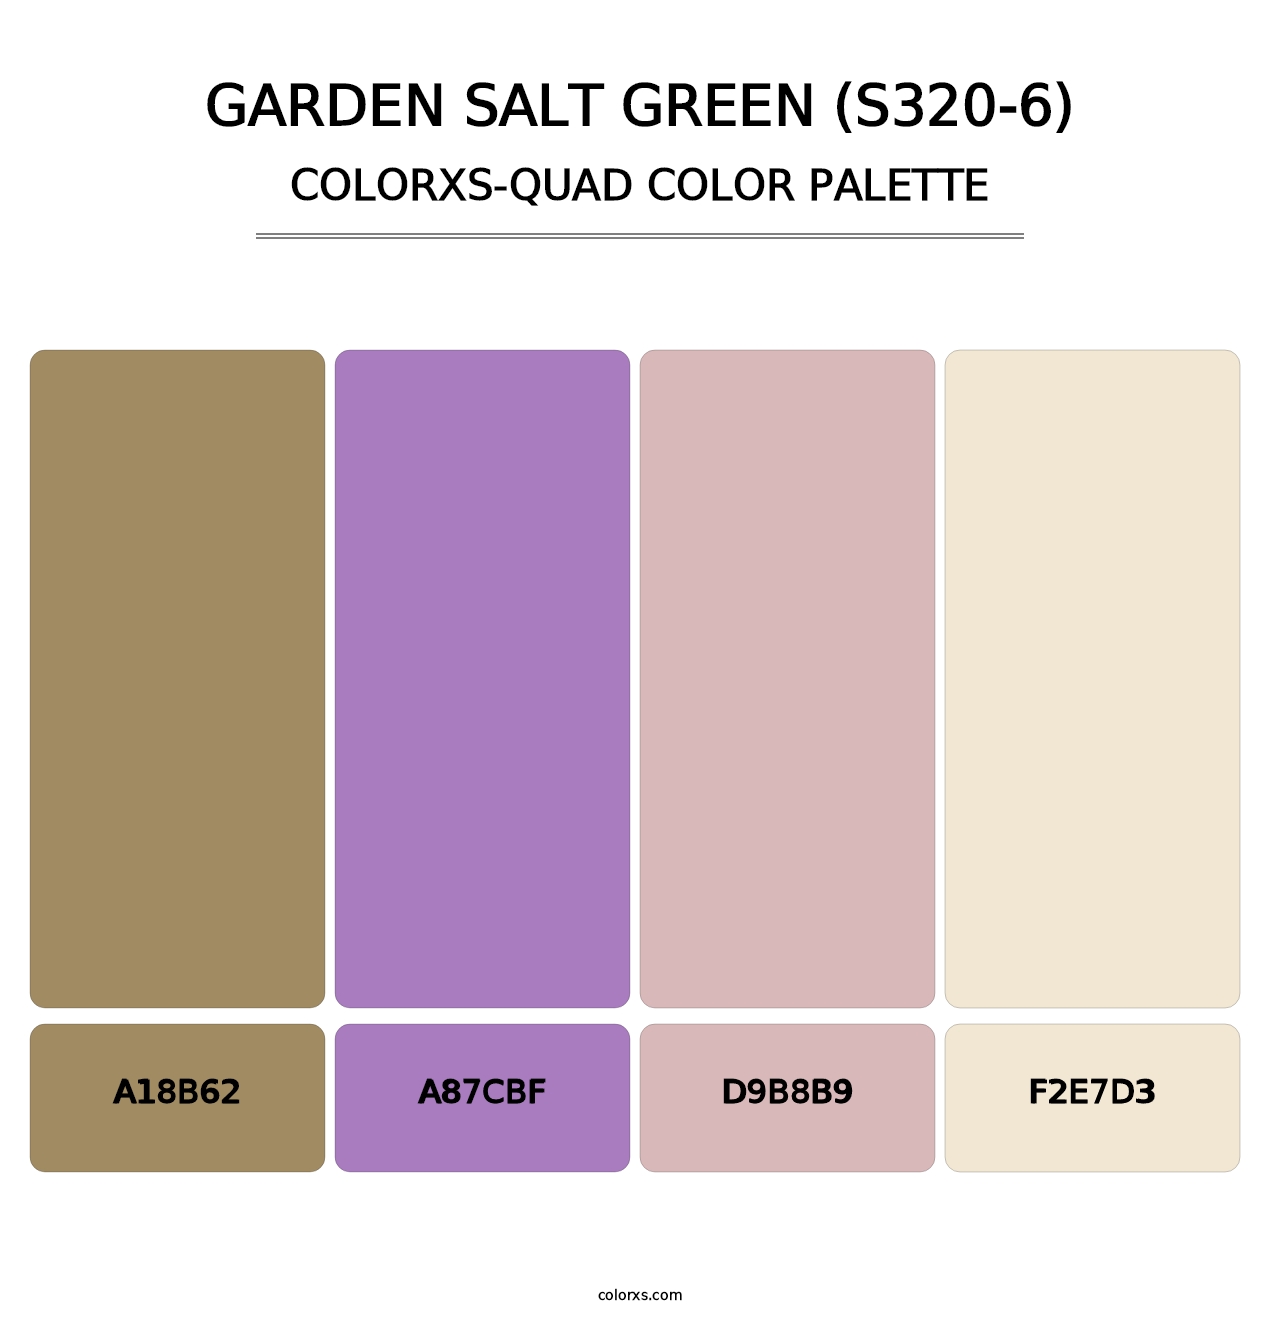 Garden Salt Green (S320-6) - Colorxs Quad Palette